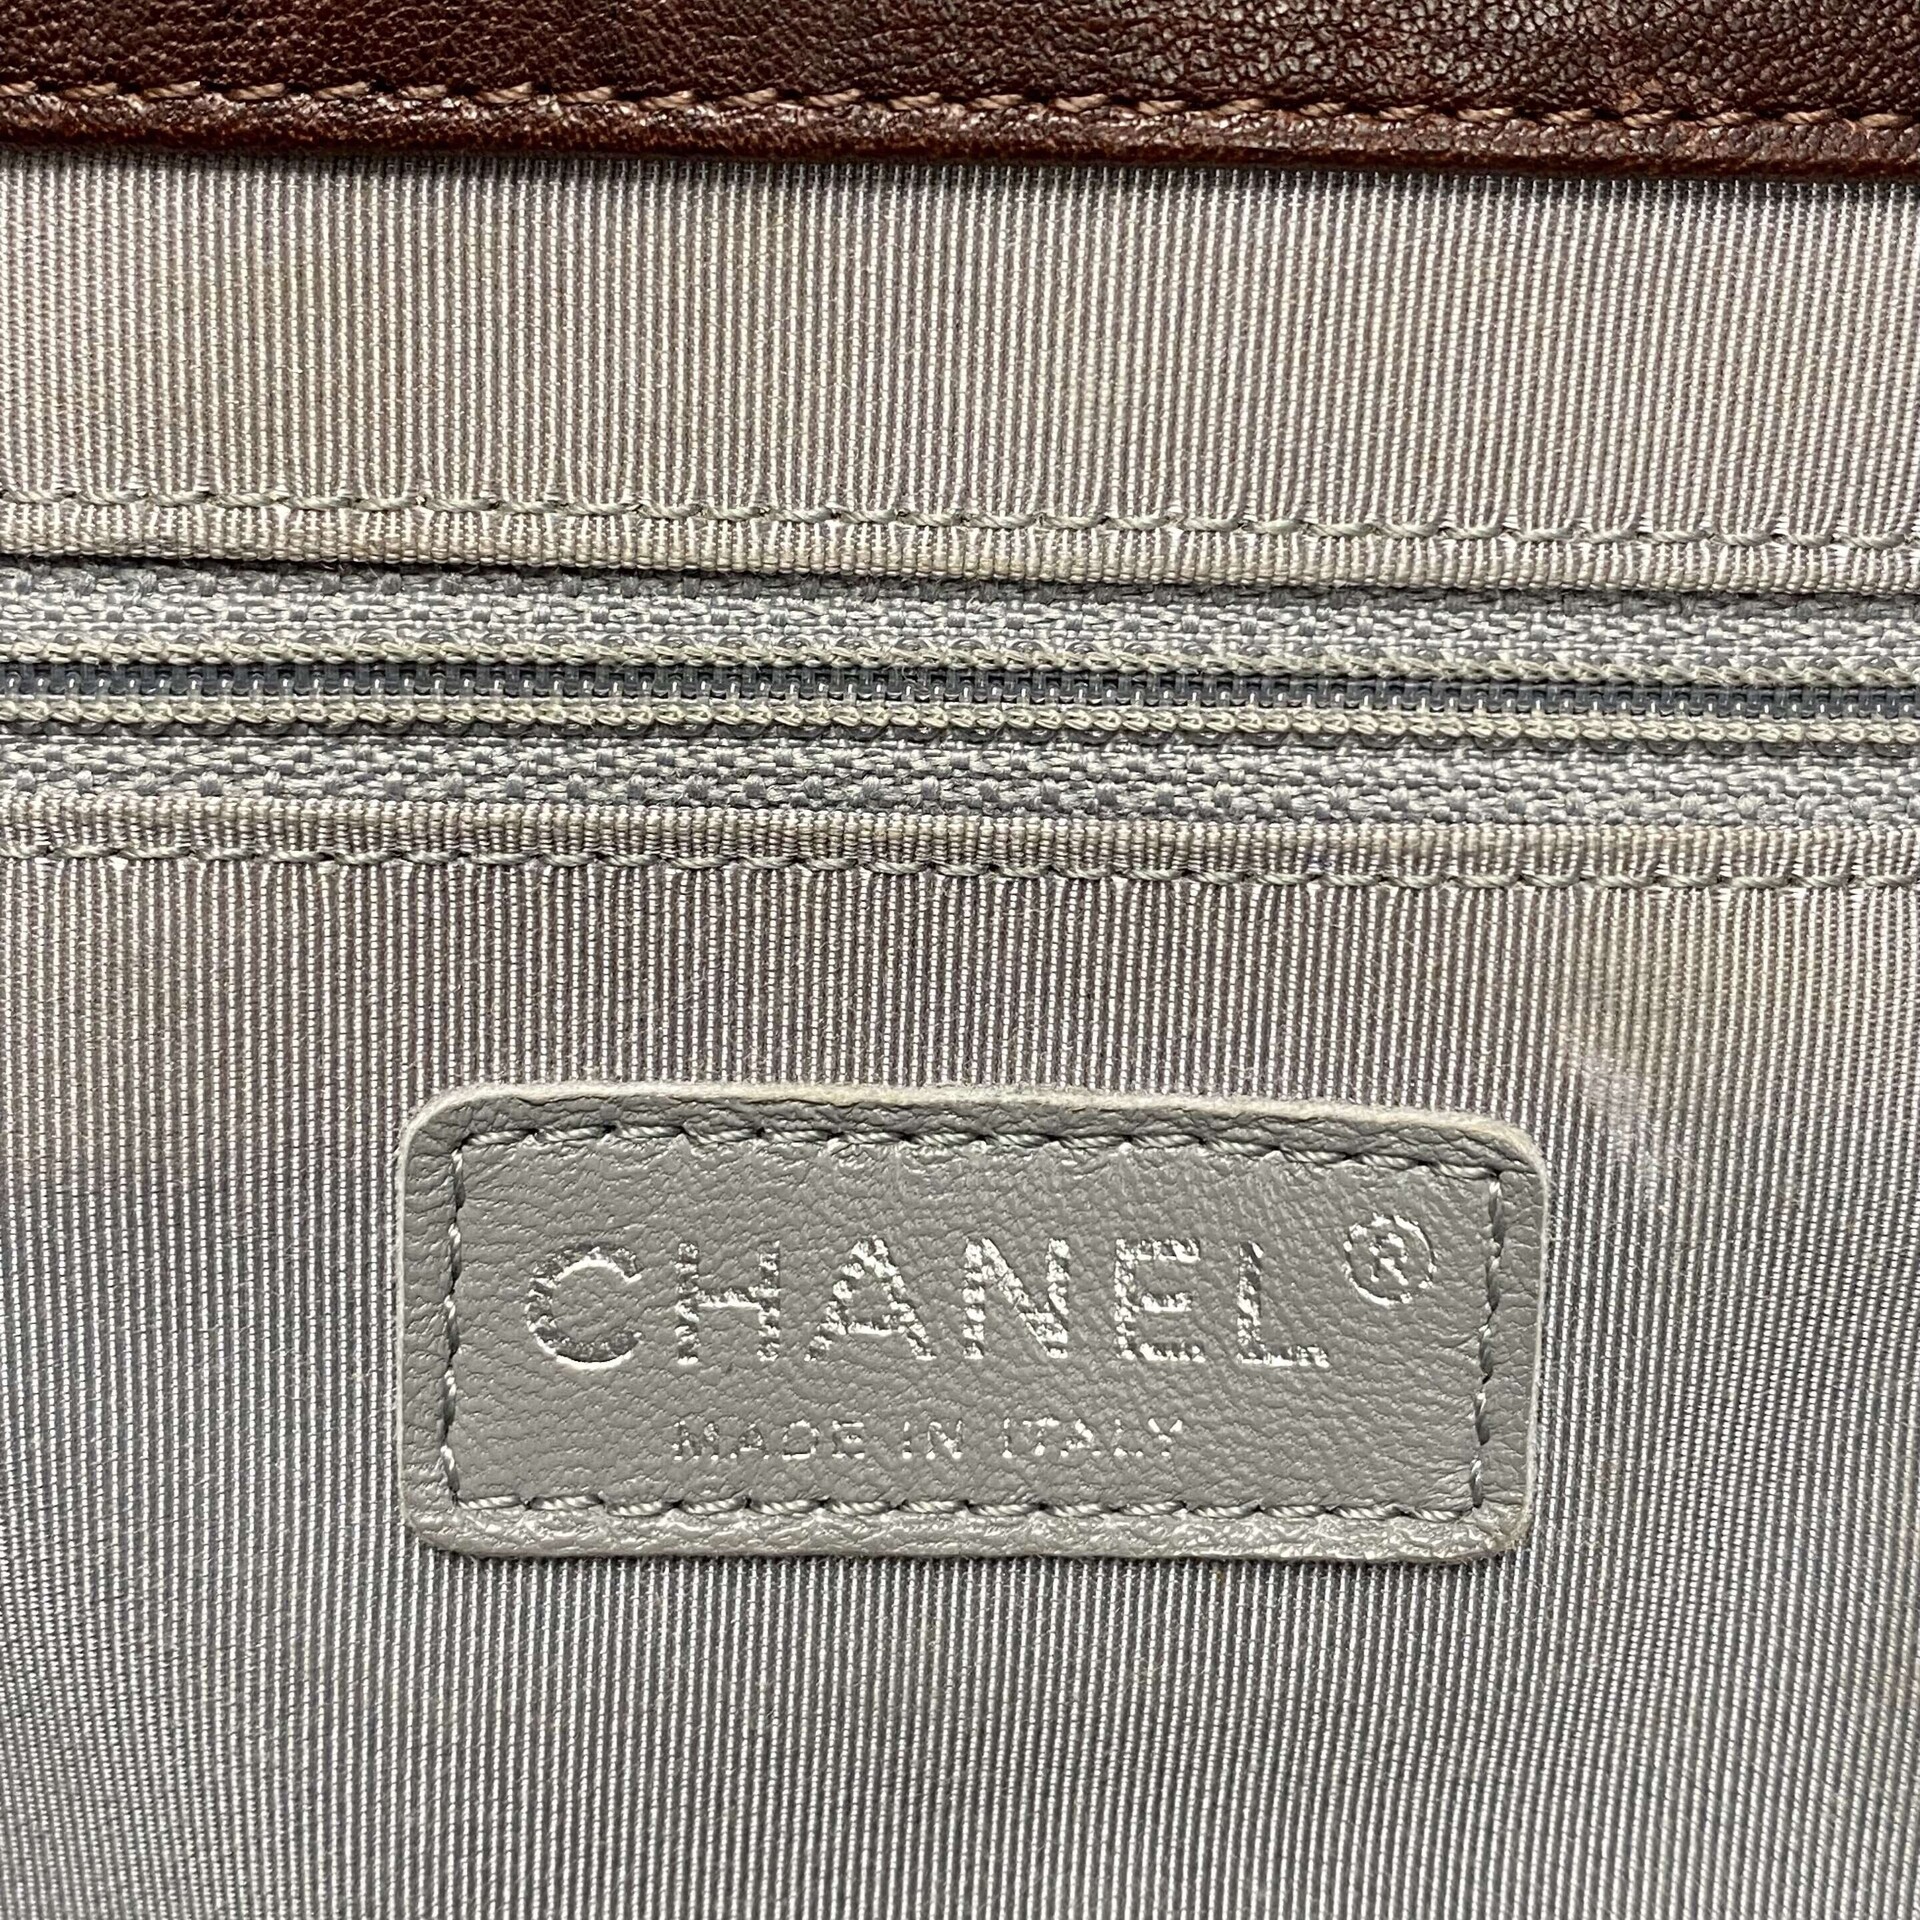 Bolsa Chanel Chain Around Vinho